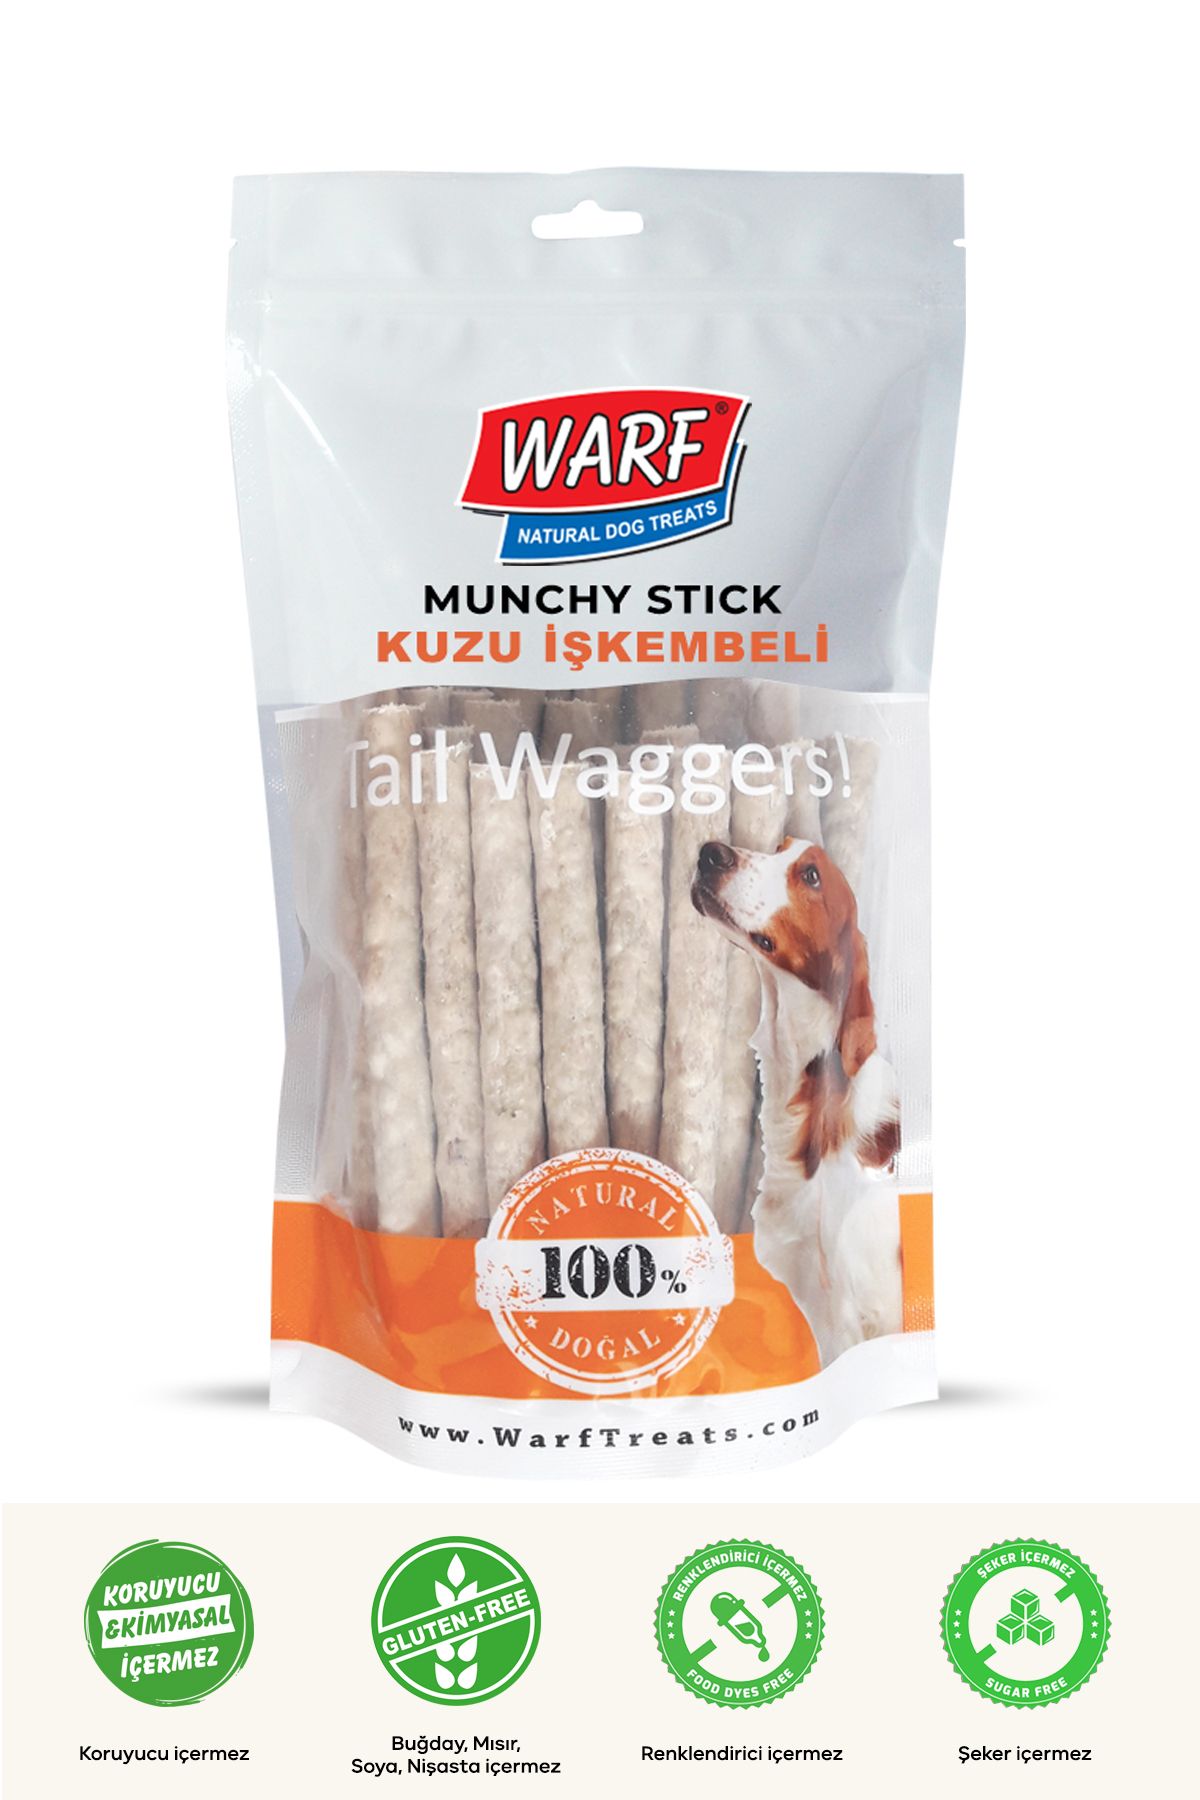 Warf Naturals Kuzu İşkembeli Munchy Sticks 40'lı 400 gr